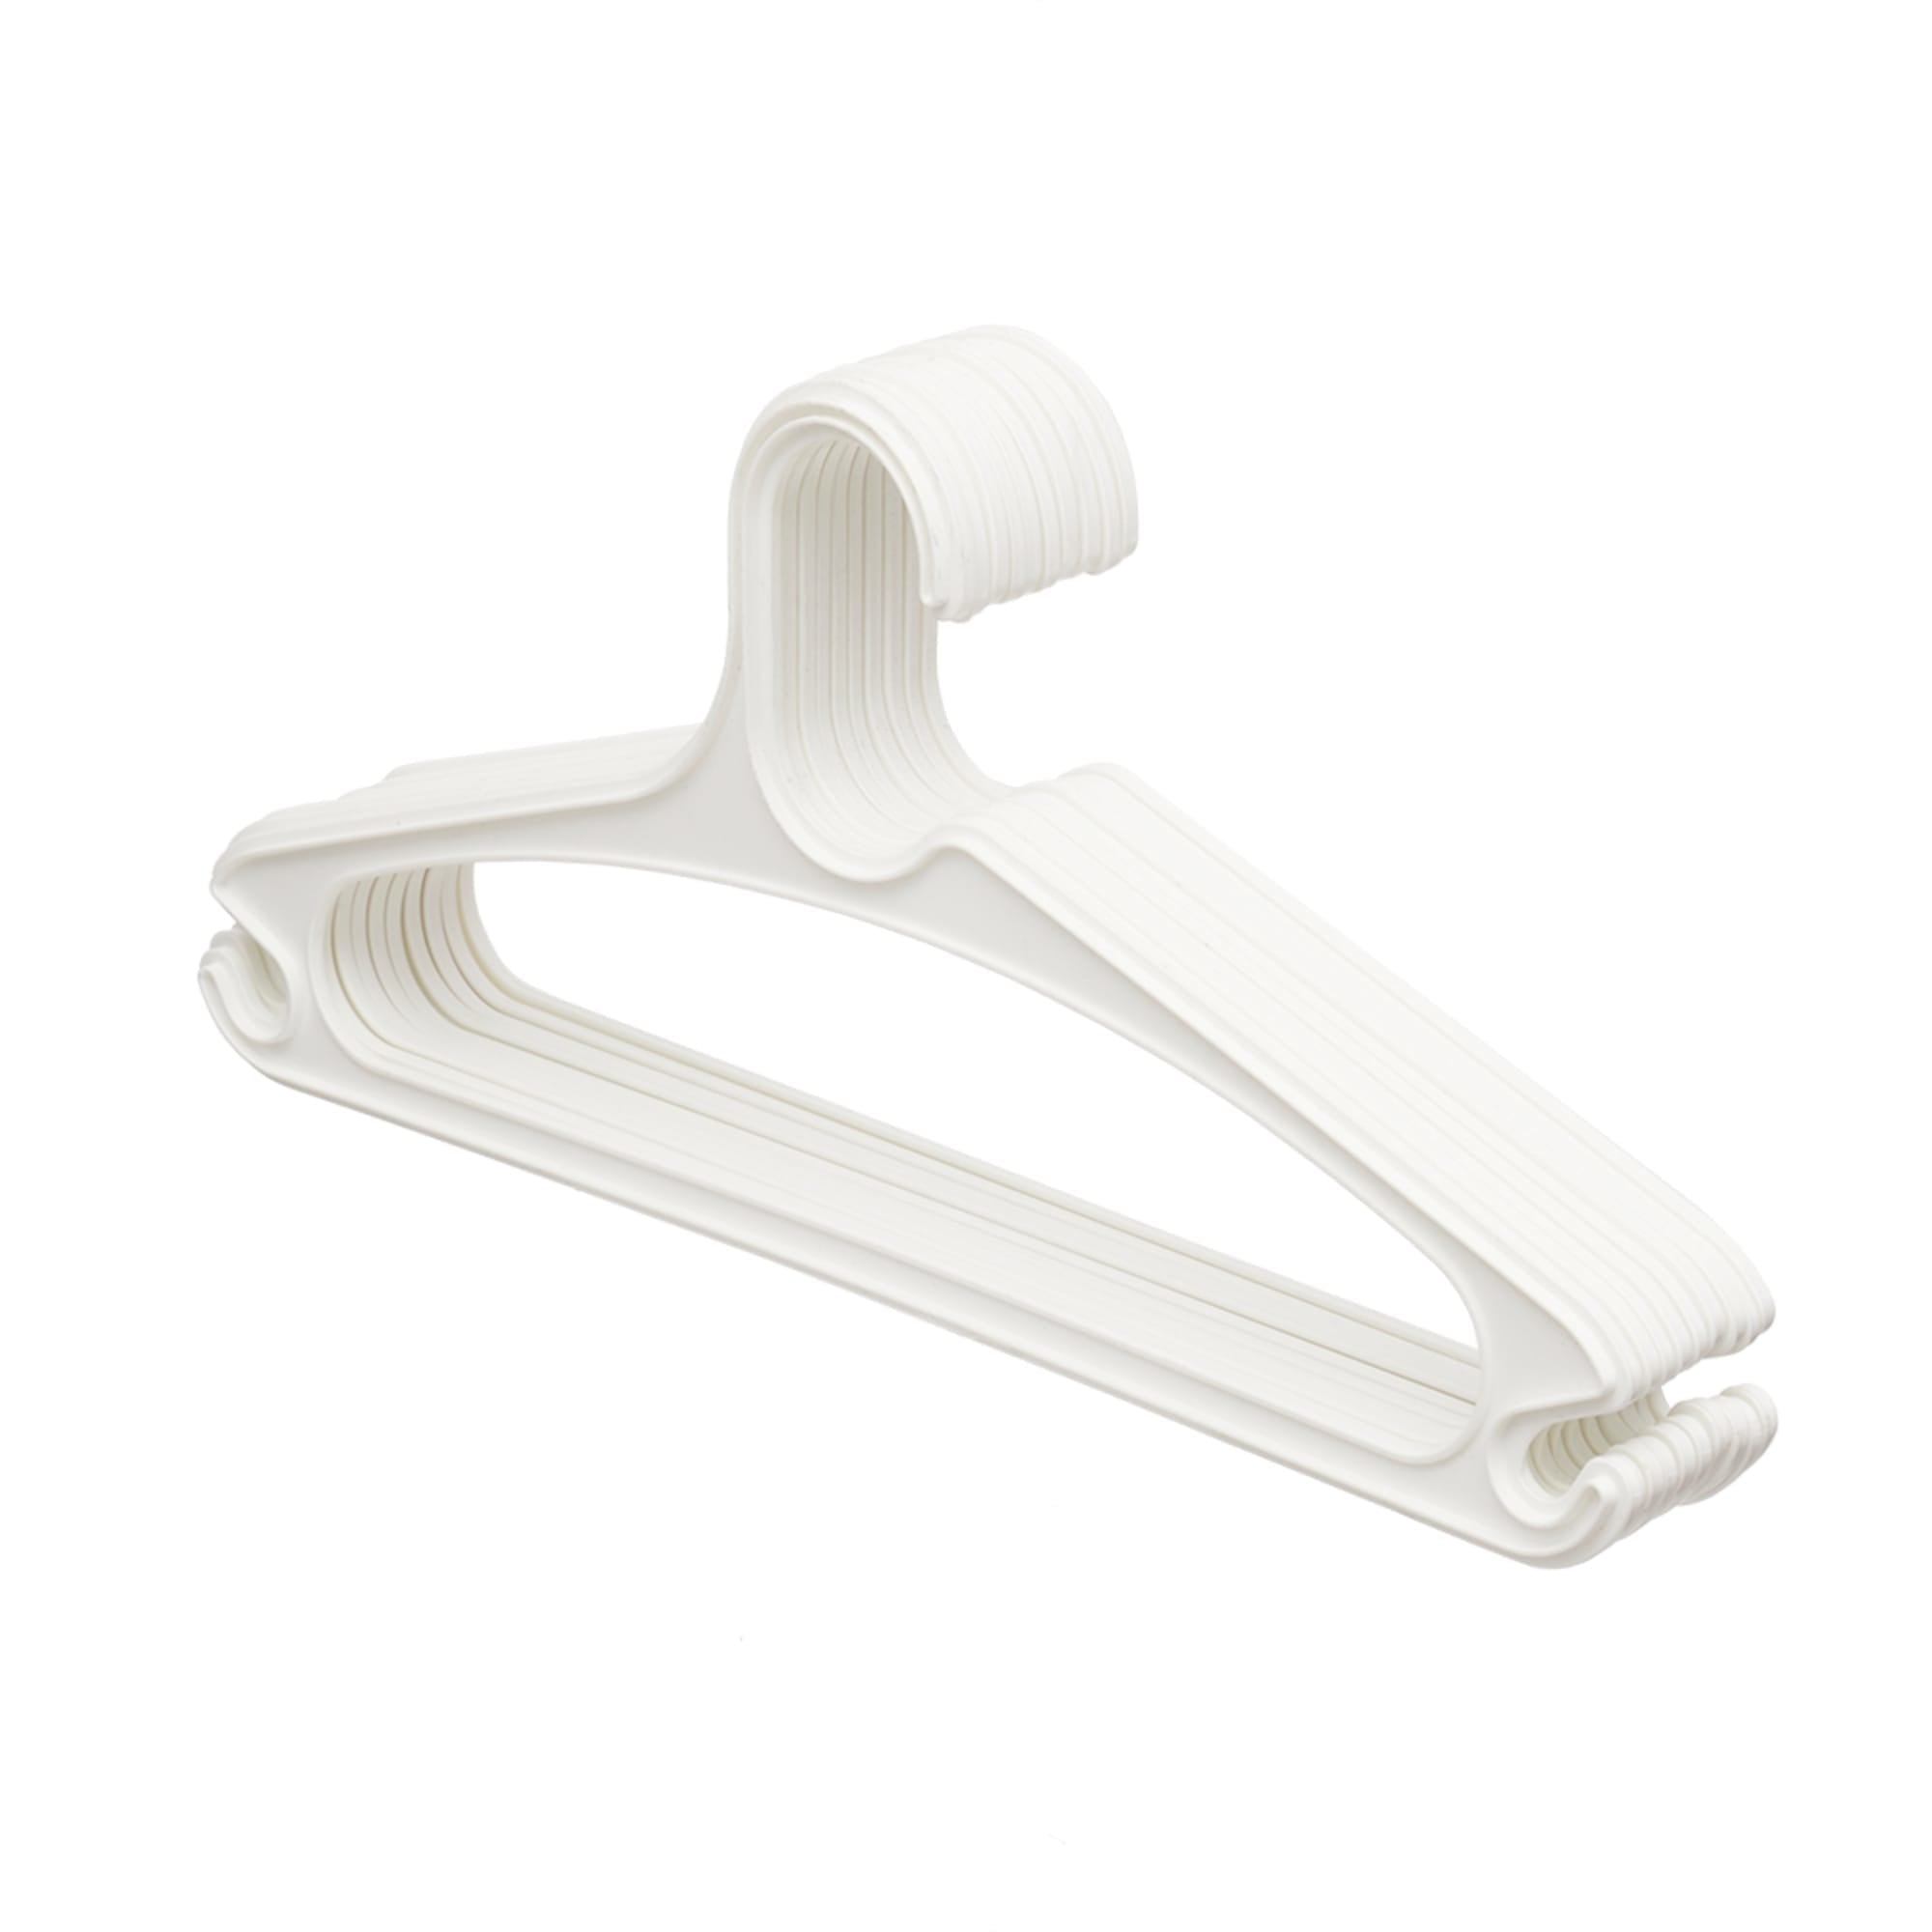 Home Basics 10 Piece Plastic Hanger Set, White $3.00 EACH, CASE PACK OF 20